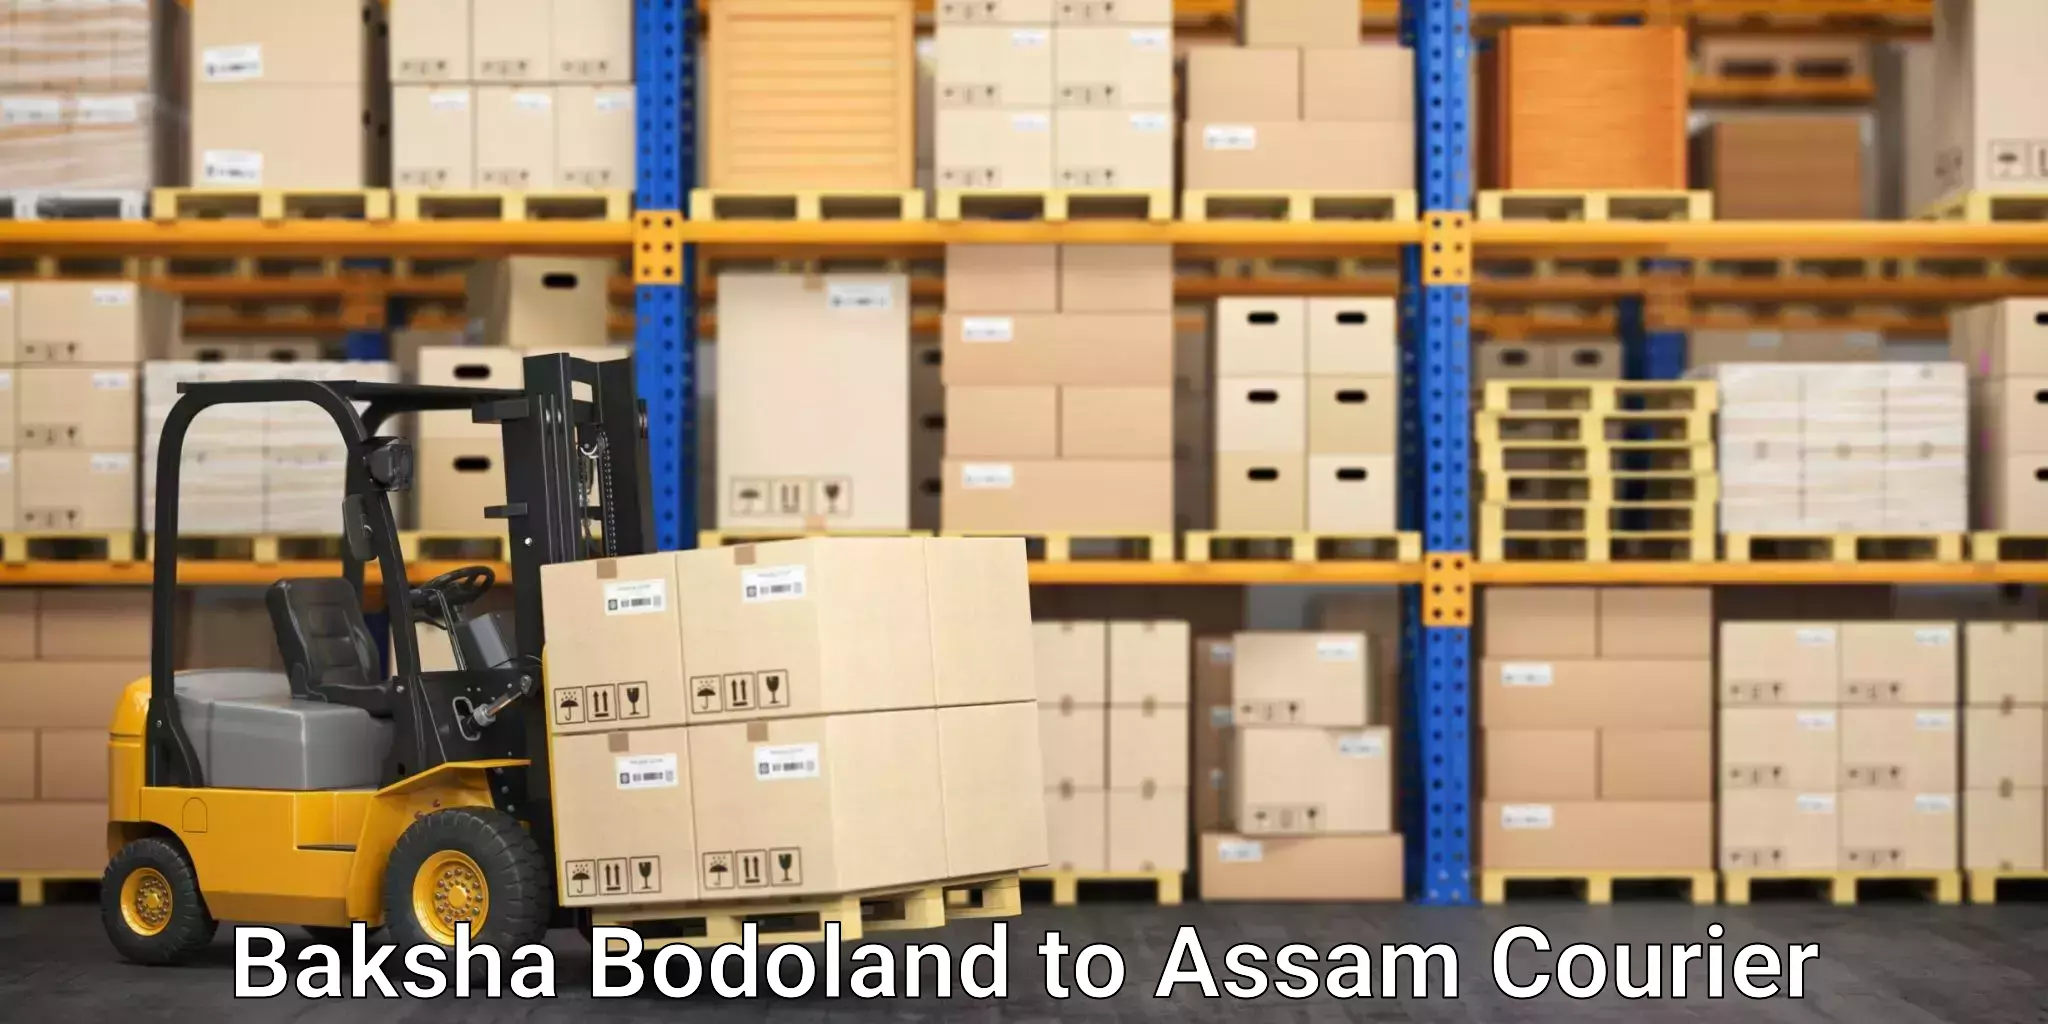 High value parcel delivery Baksha Bodoland to Gohpur